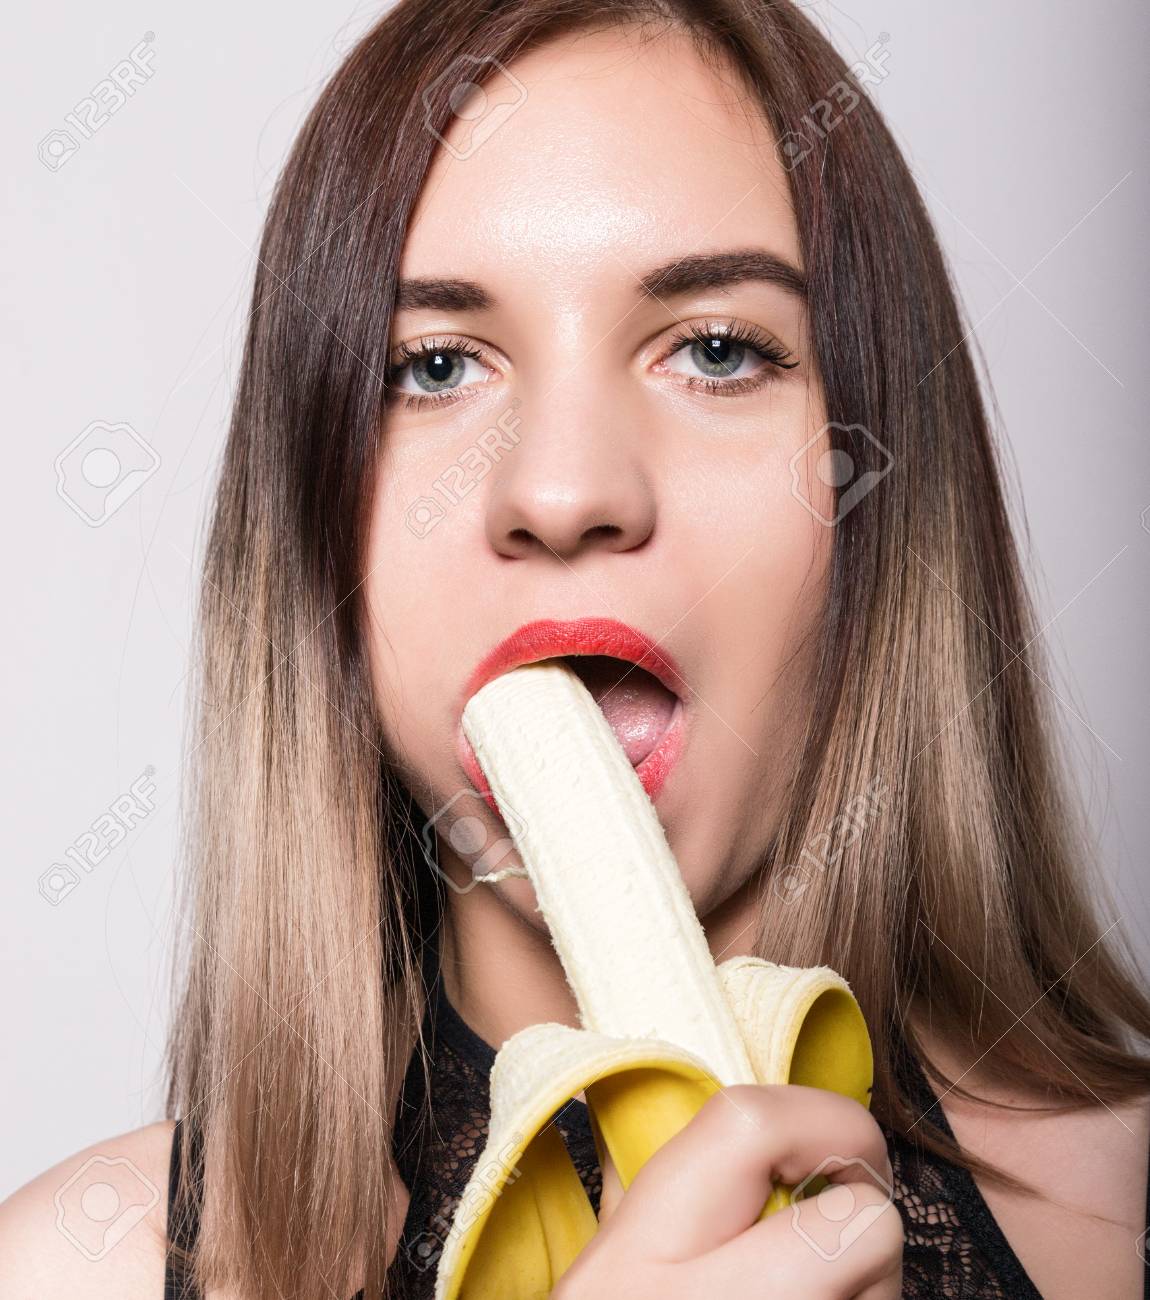 cheryl osburn add photo girl sucking on banana